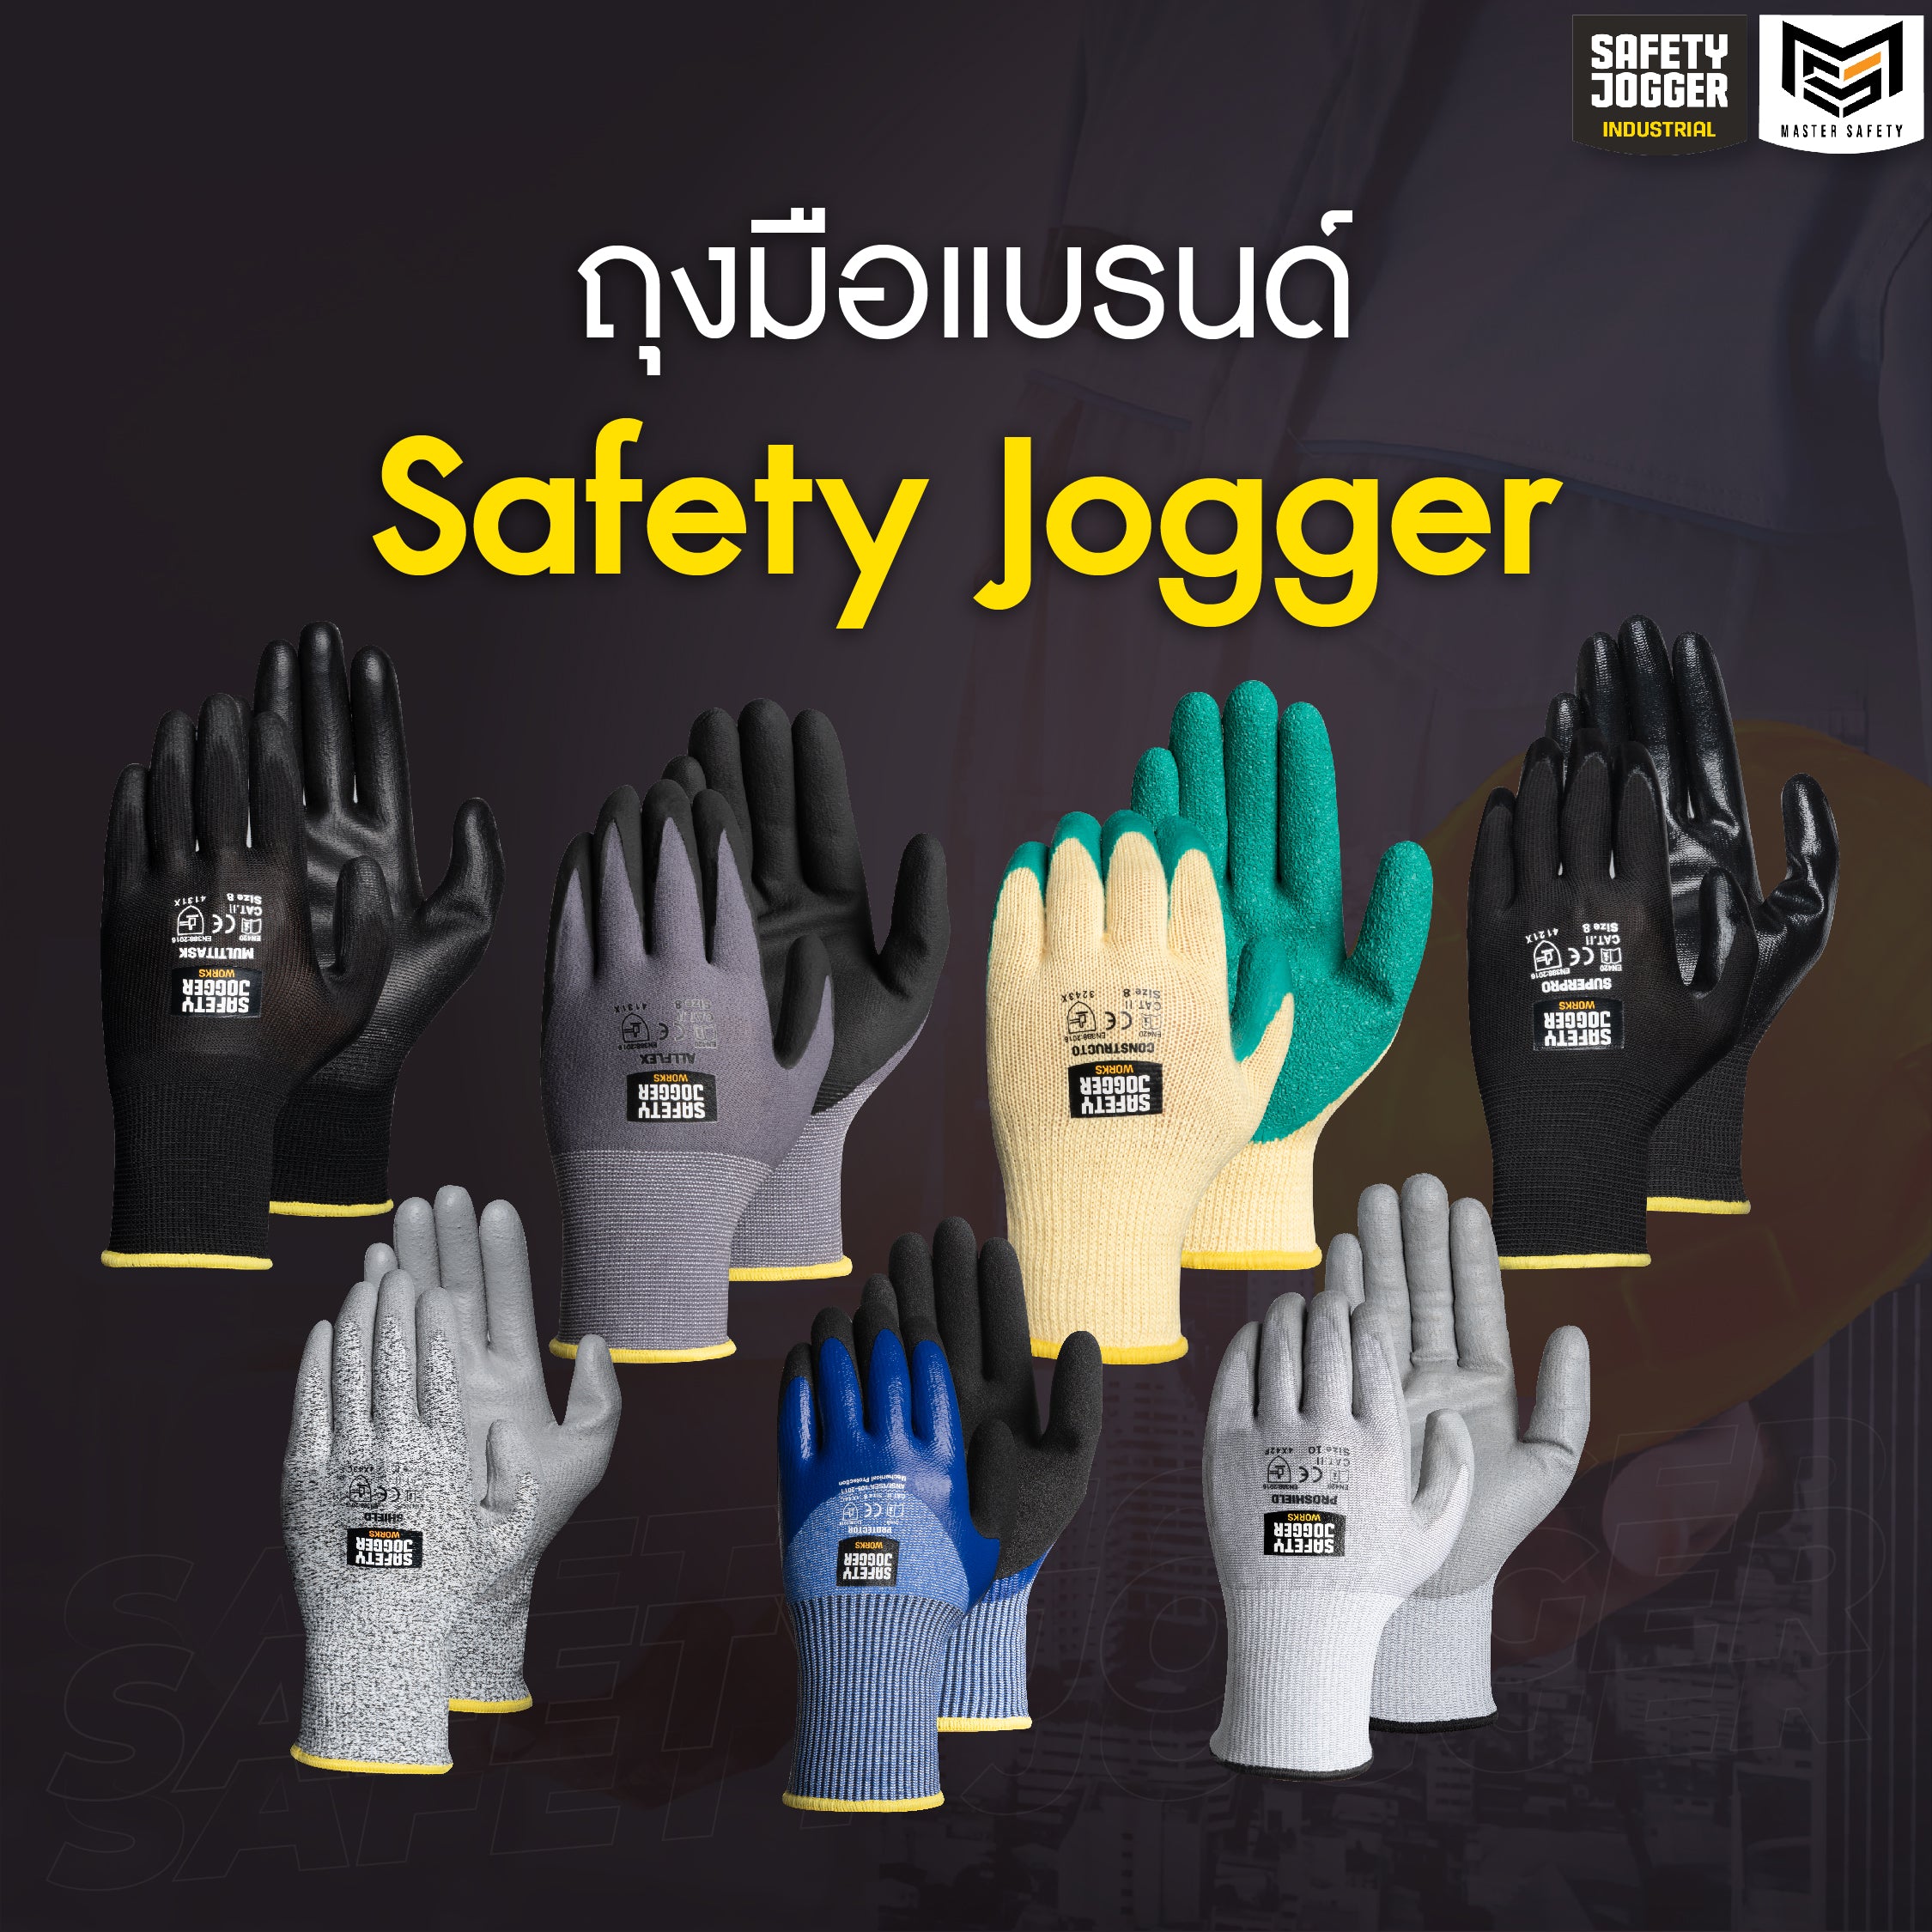 ถุงมือแบรนด์ Safety Jogger